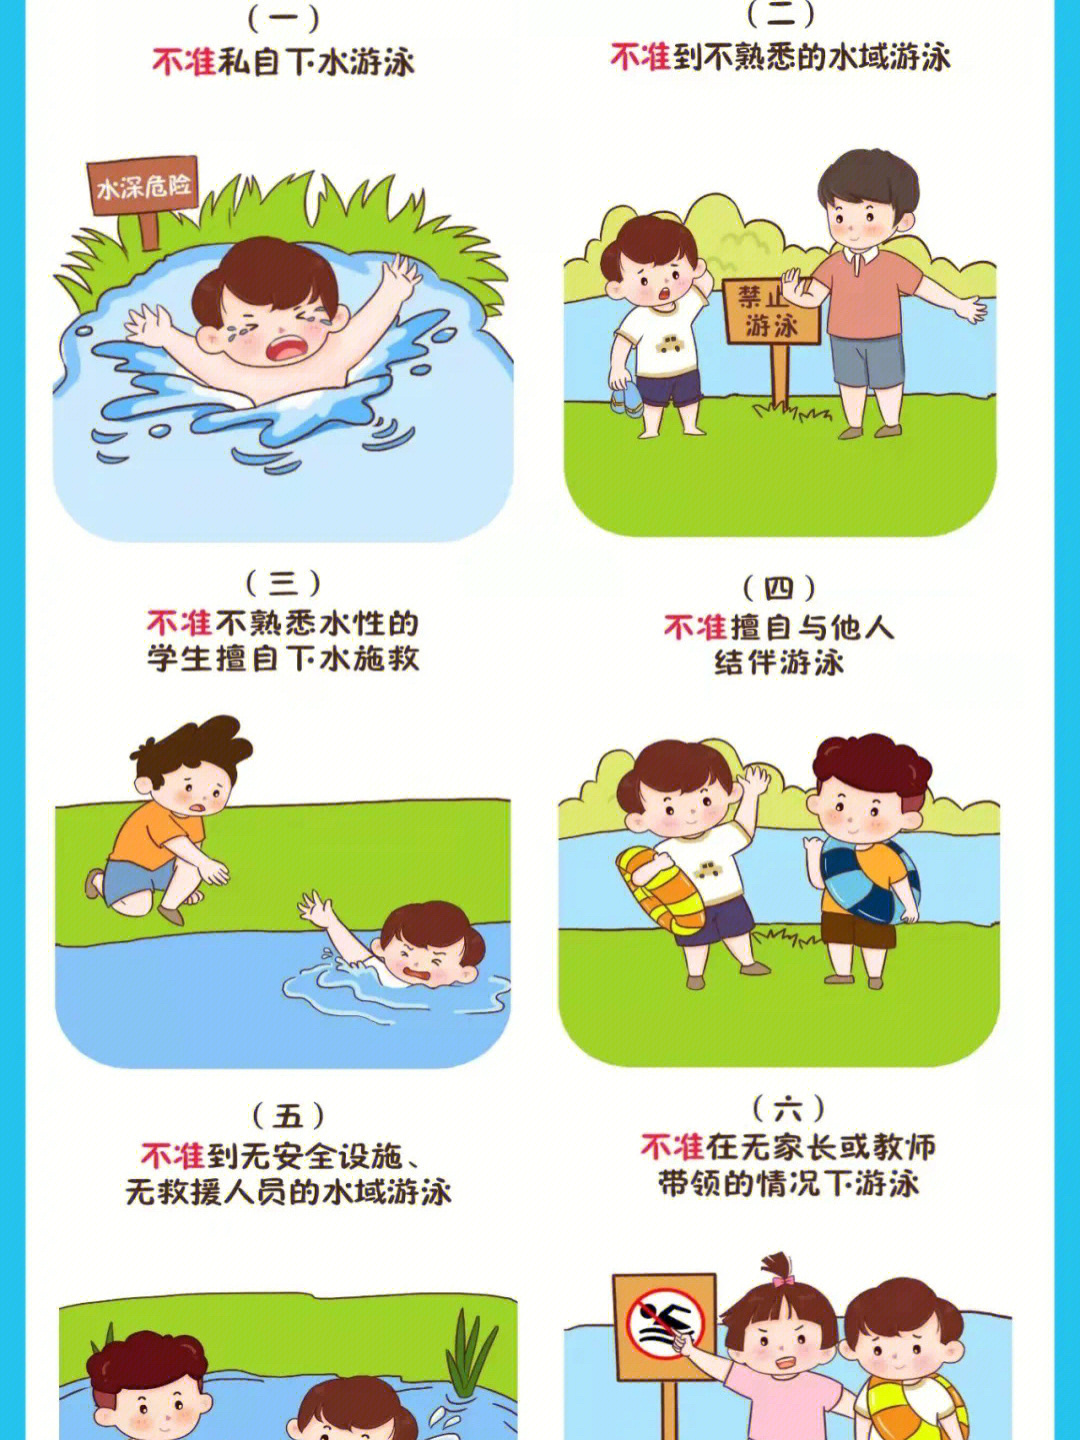 夏季儿童安全防范常识图片